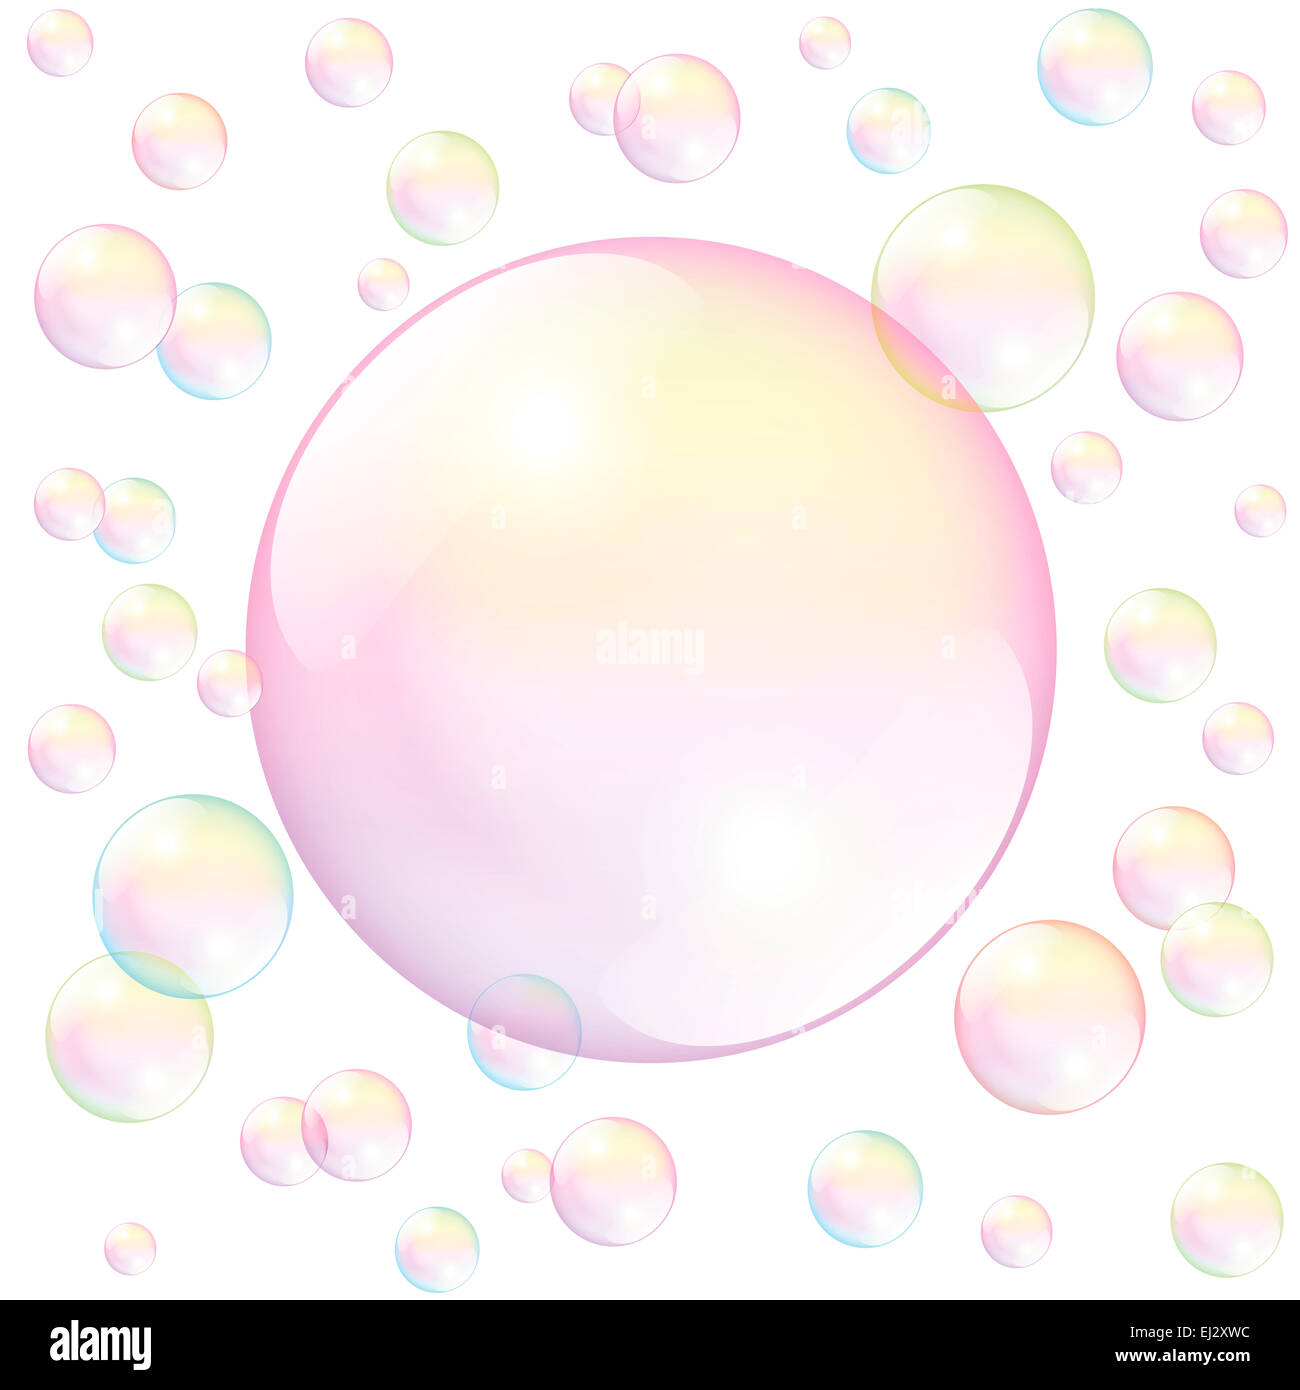 Grosse bulle de savon rose entouré de petites bulles de savon - à remplir n'importe quel texte ou image. Banque D'Images